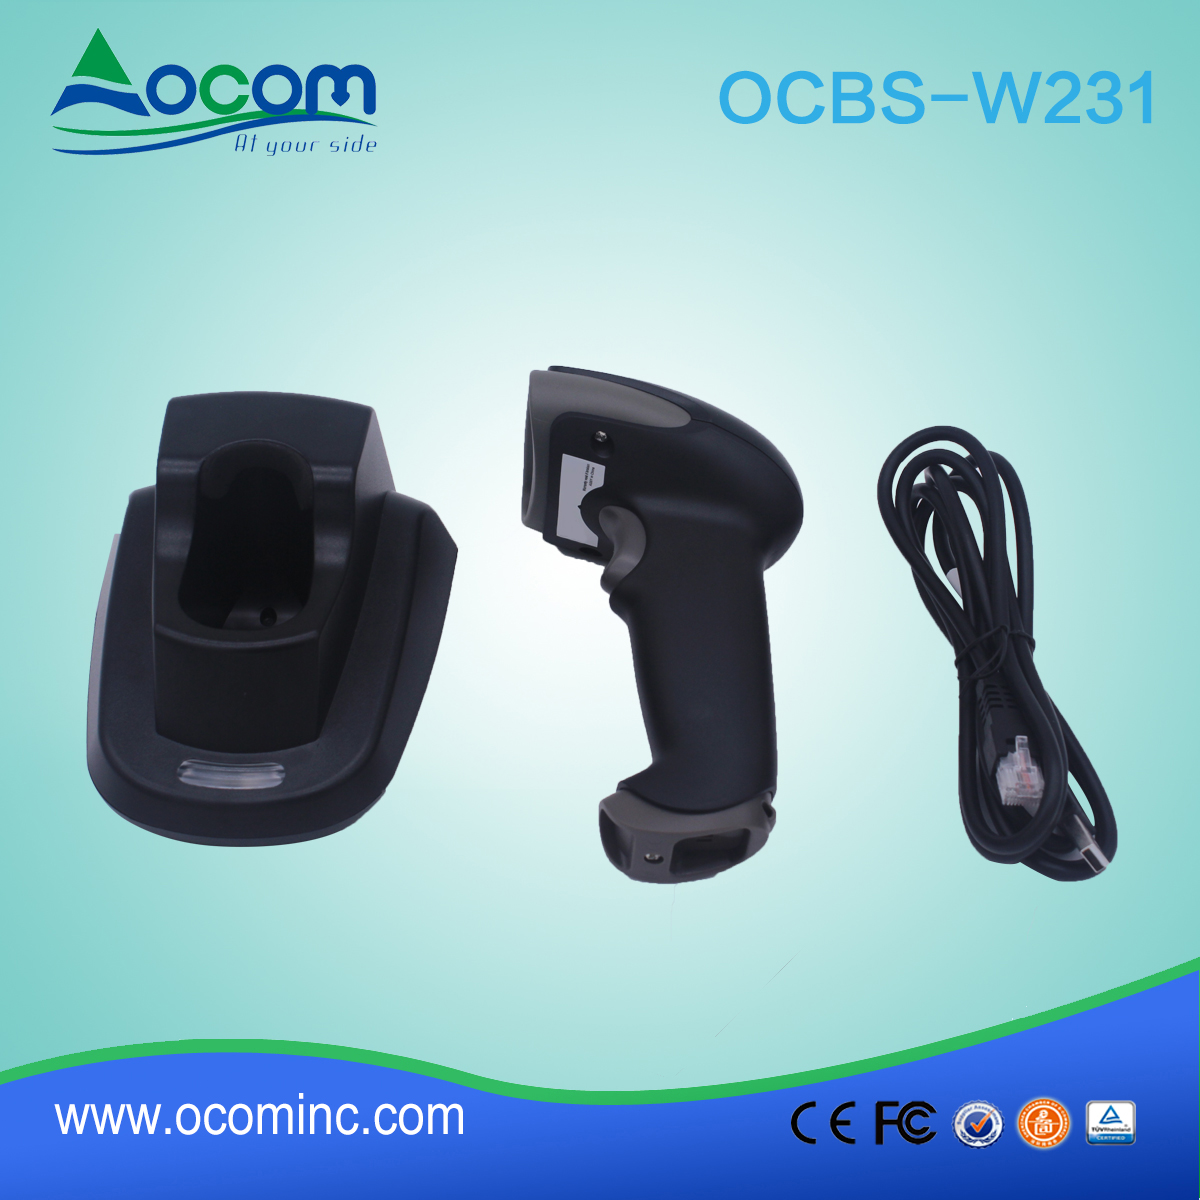 (OCBS-W231) Handheld 433 MHz Wireless 2D Barcode Scanner mit Cradle